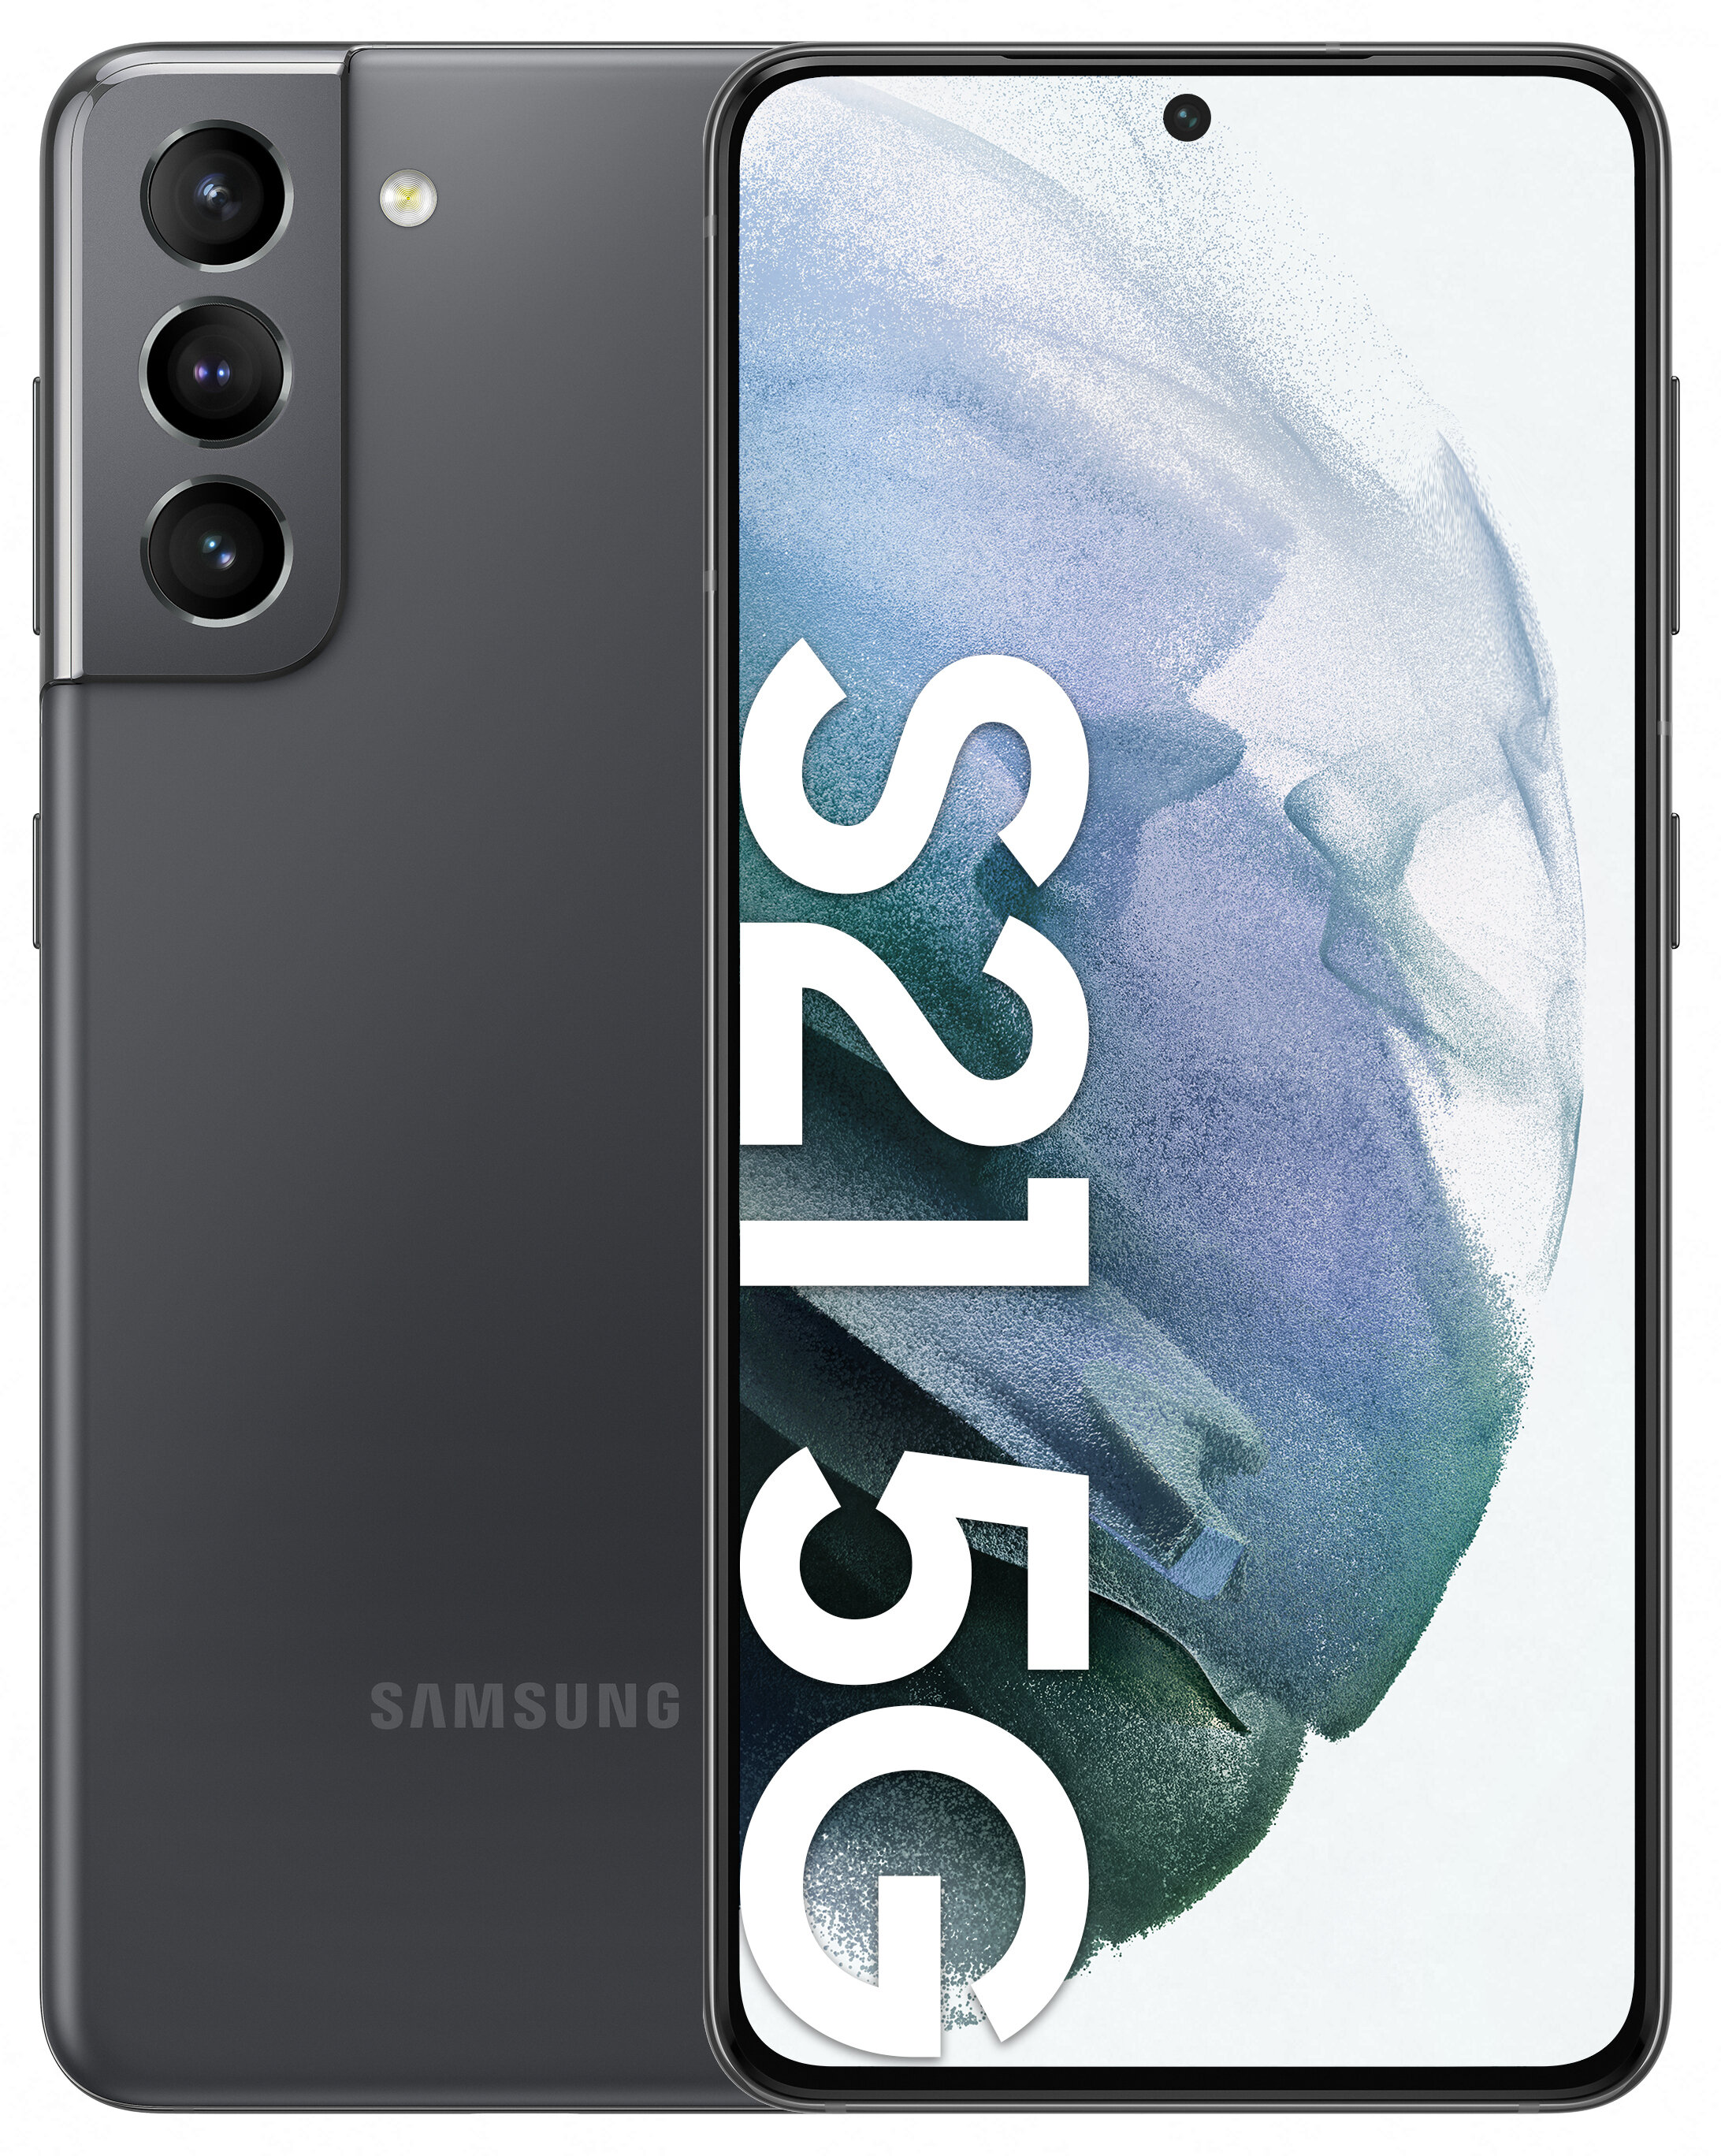 SAMSUNG Galaxy S21 8/128GB 5G 6.2" 120Hz Szary SM-G991 Smartfon - niskie  ceny i opinie w Media Expert